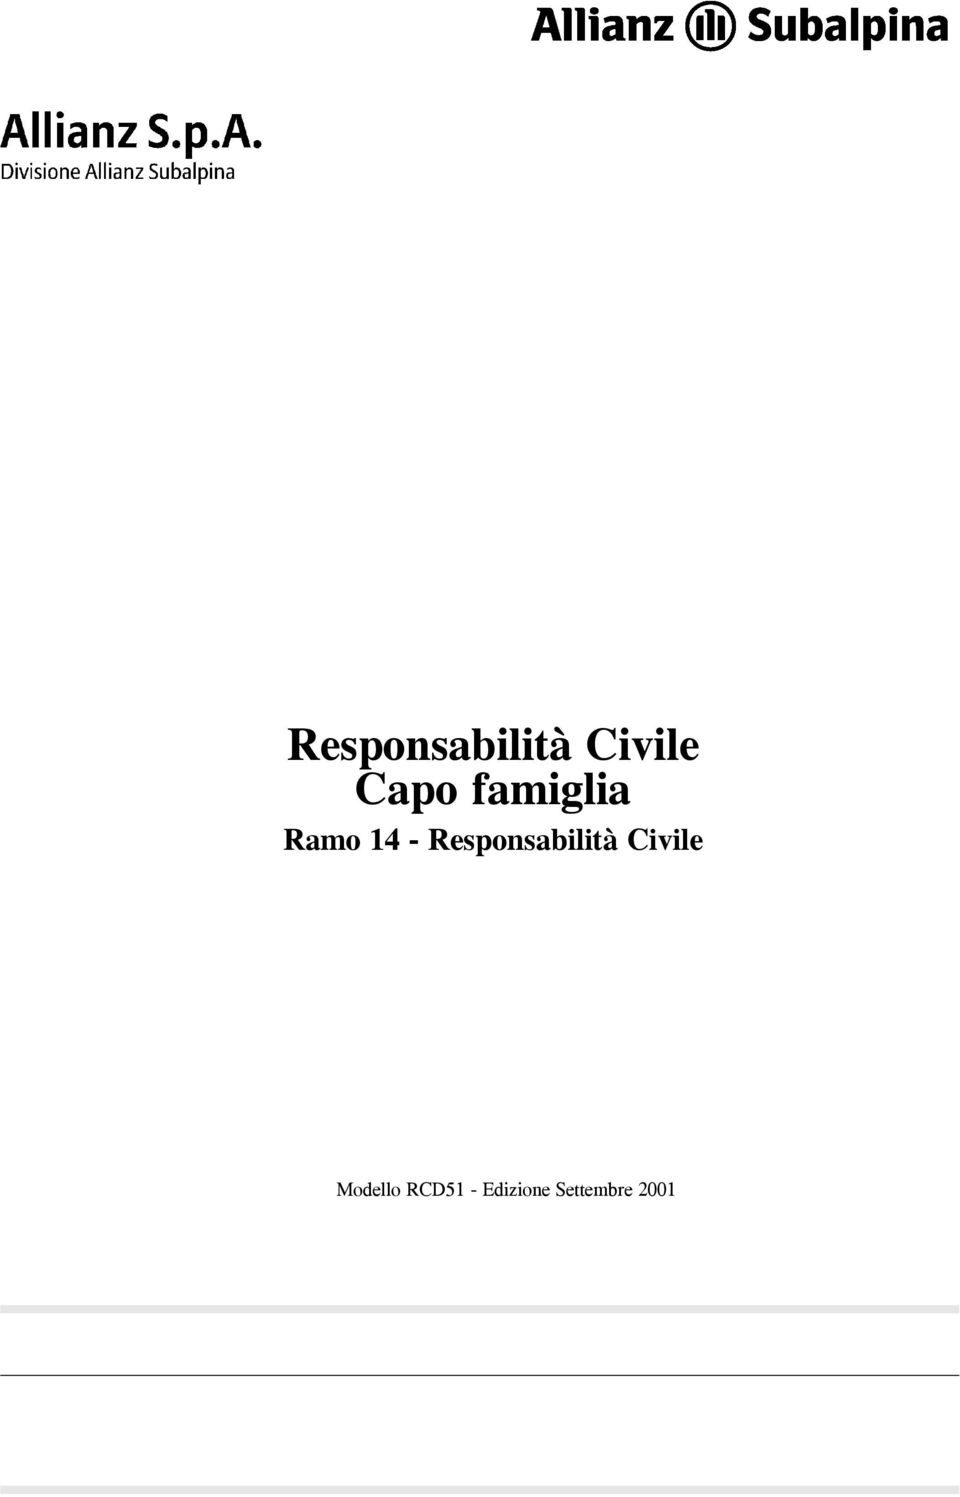 Responsabilità Civile